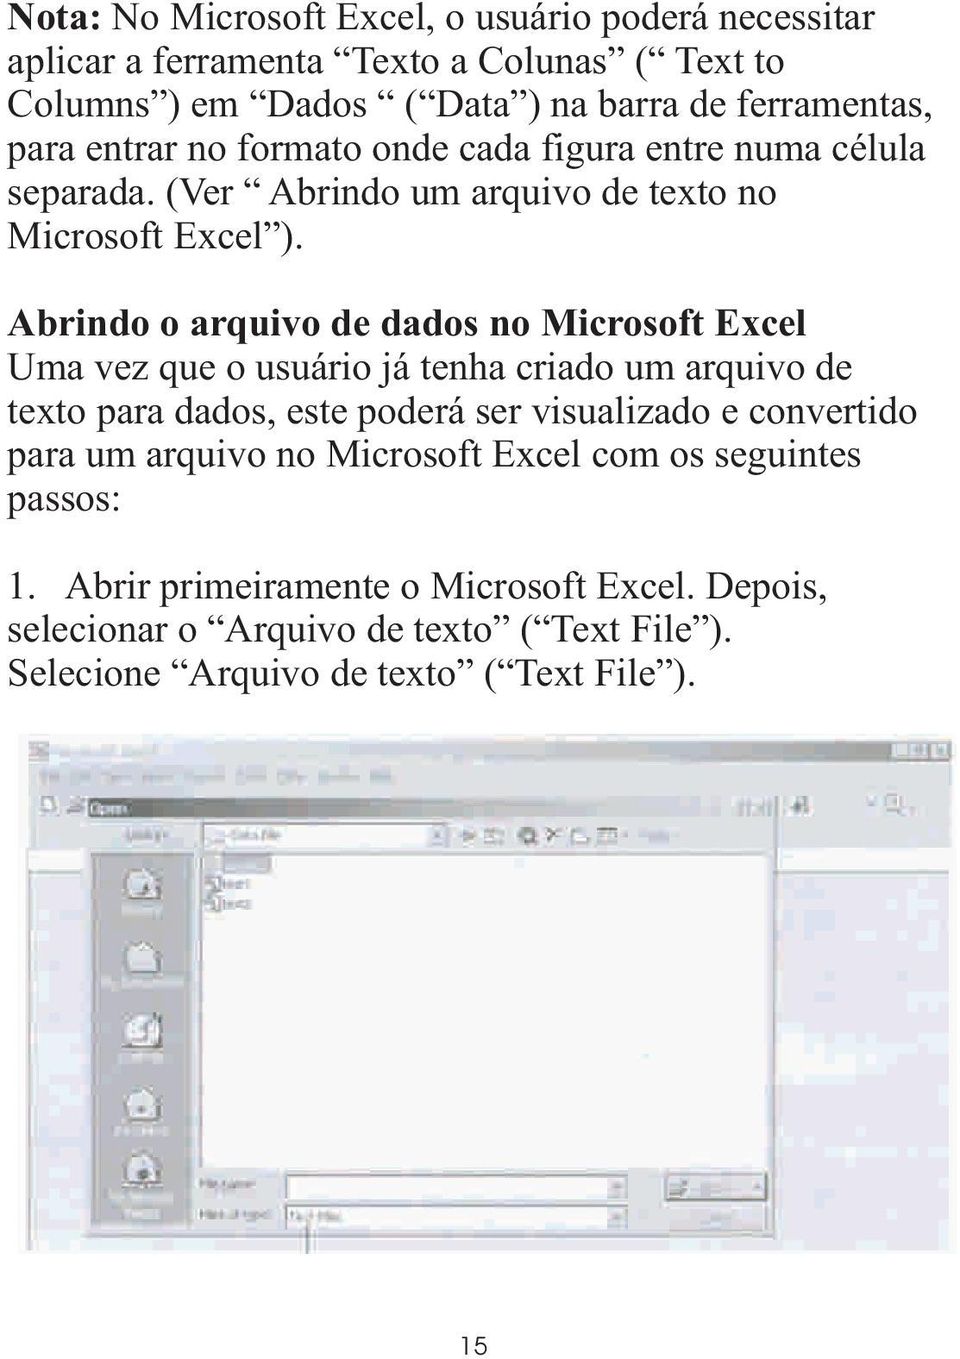 Abrindo o arquivo de dados no Microsoft Excel Uma vez que o usuário já tenha criado um arquivo de texto para dados, este poderá ser visualizado e convertido